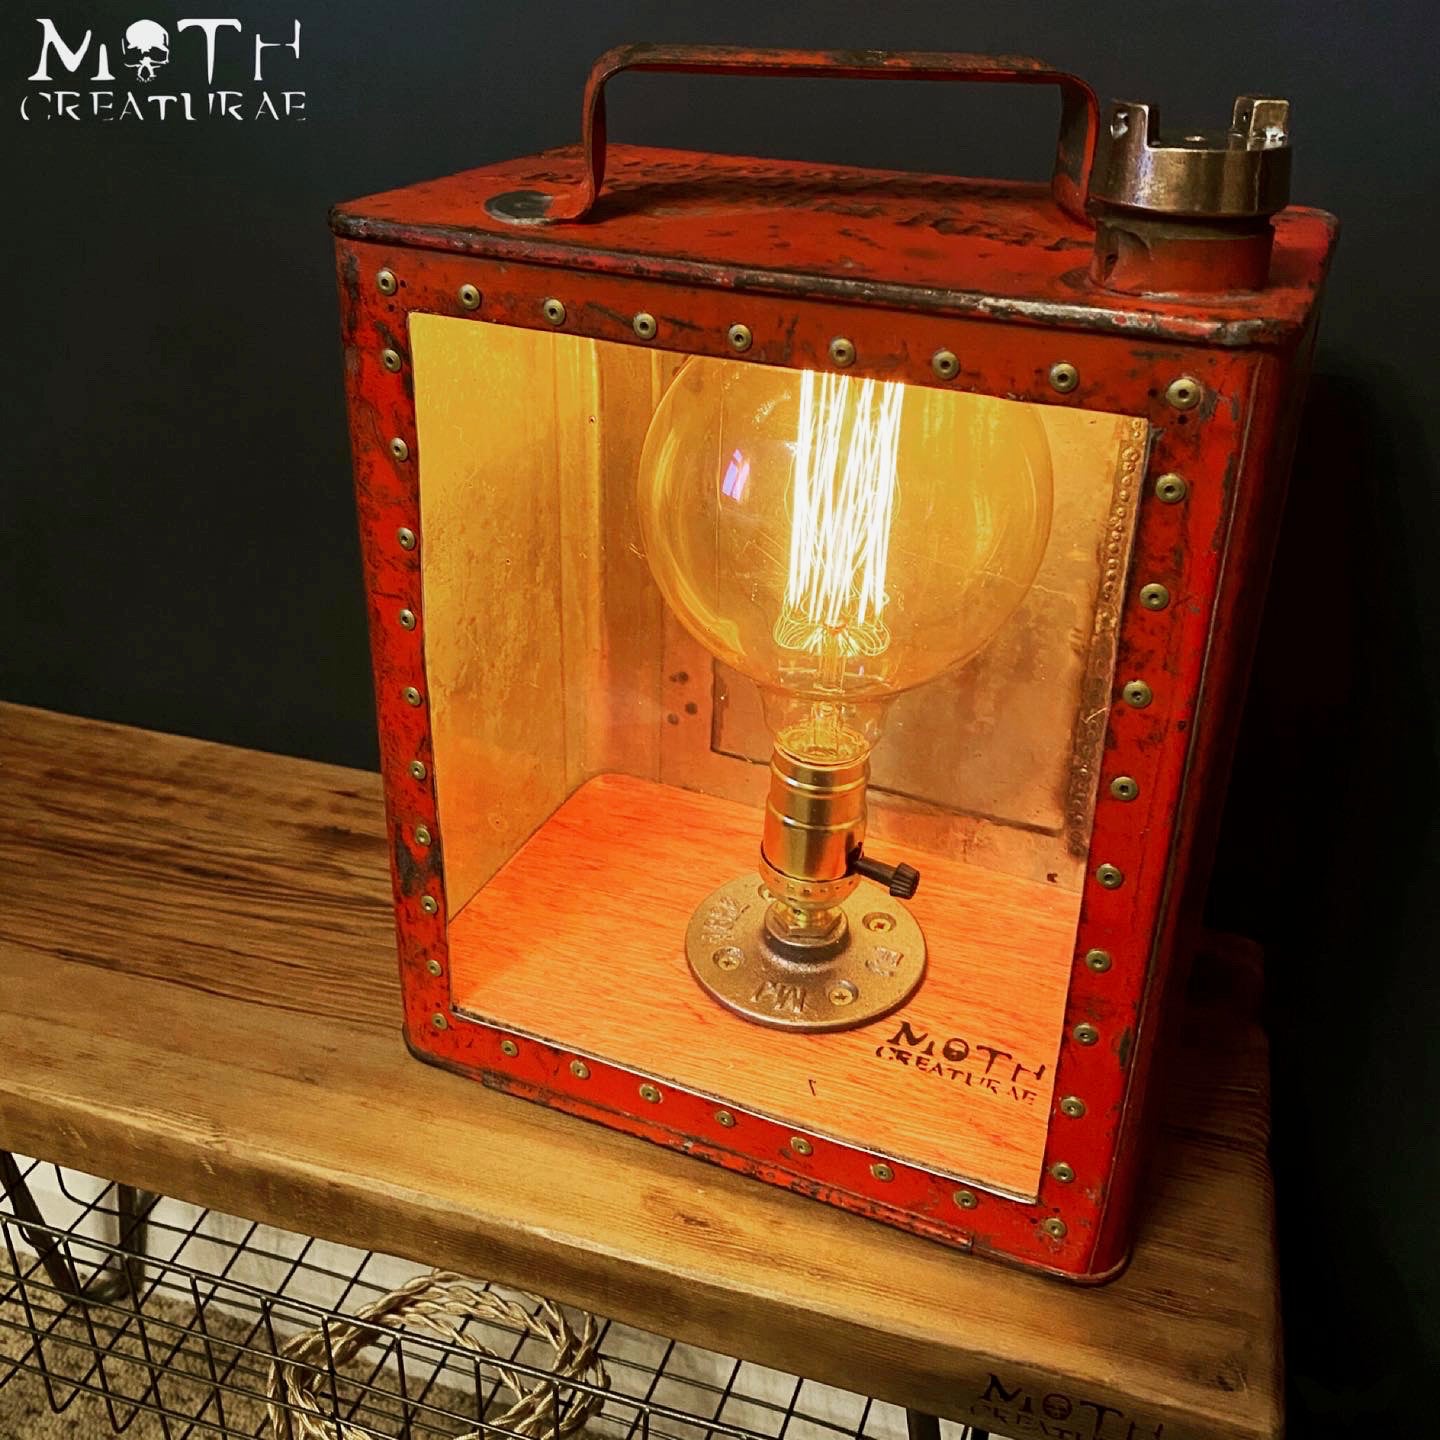 Moth Creaturae 'Fuel' Lamp